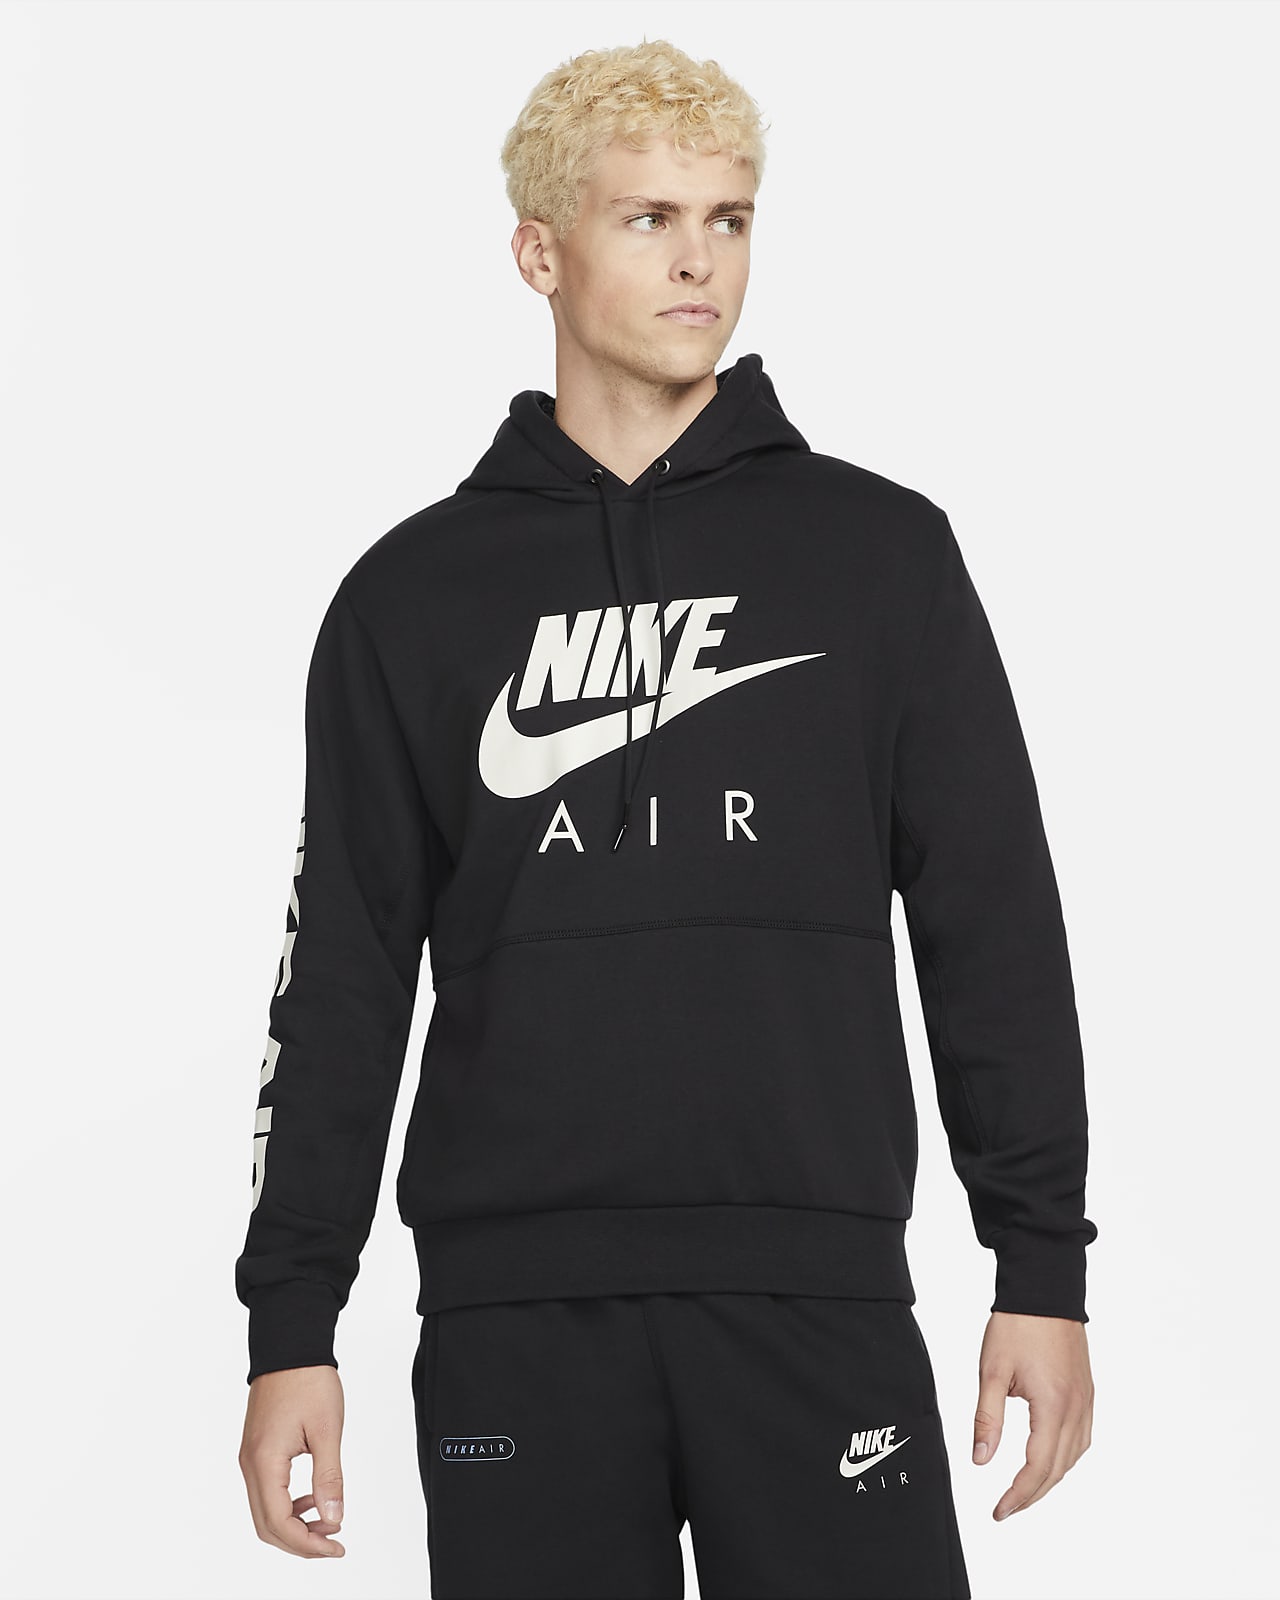 Pánská mikina z česaného flísu Nike Air s kapucí